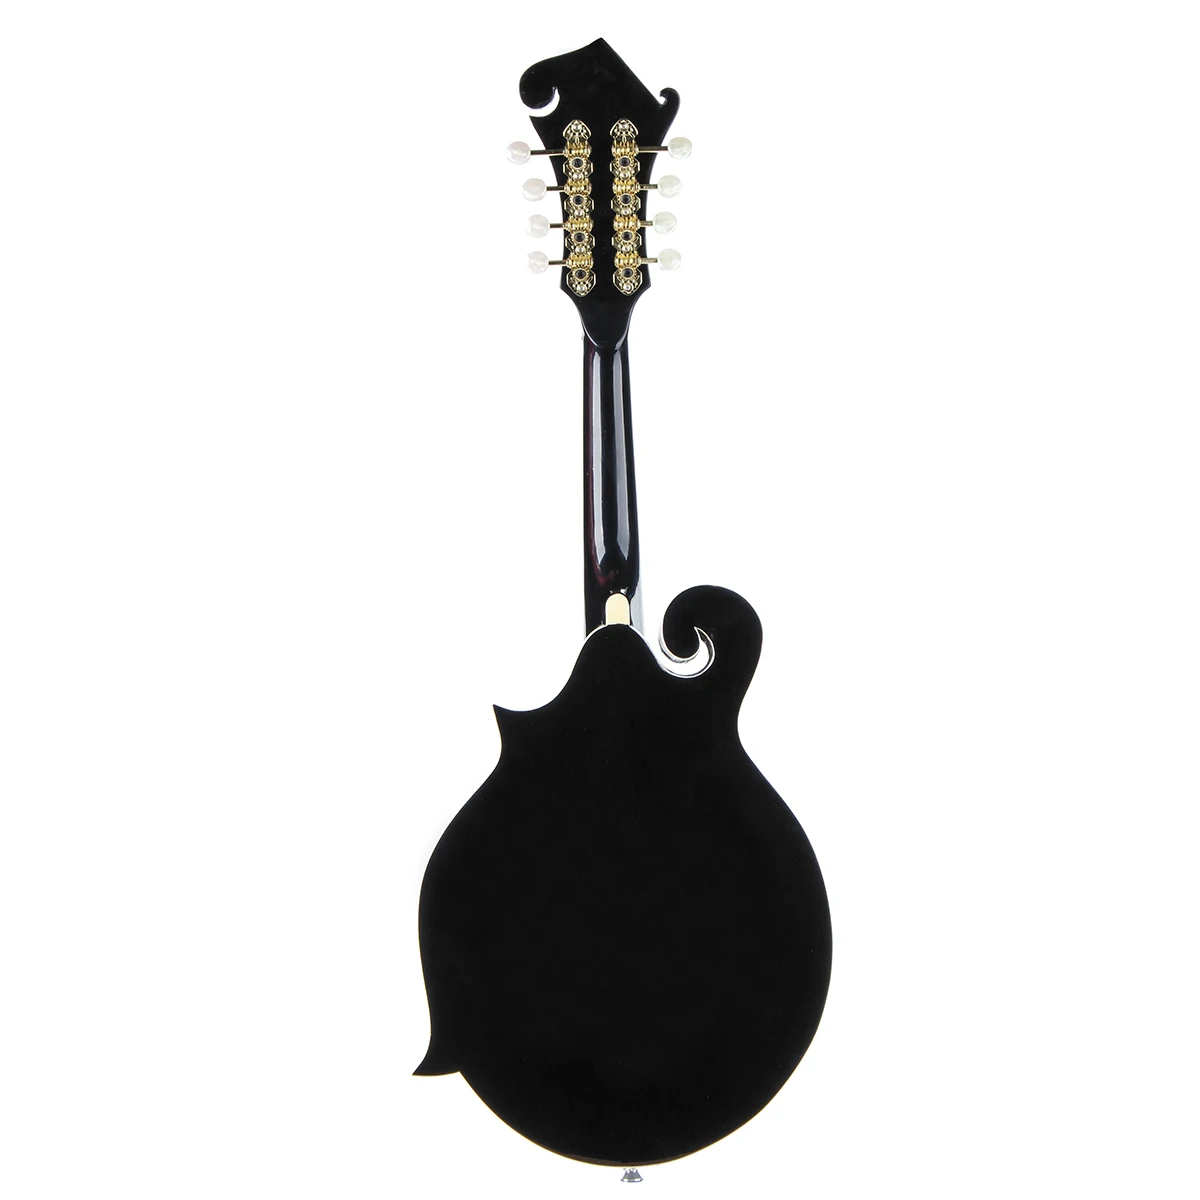 SENRHY F Стиль 8 струн черный мандолин с палисандр стальная струна Регулируемый мост музыкальный инструмент с сумкой и 2 выборки